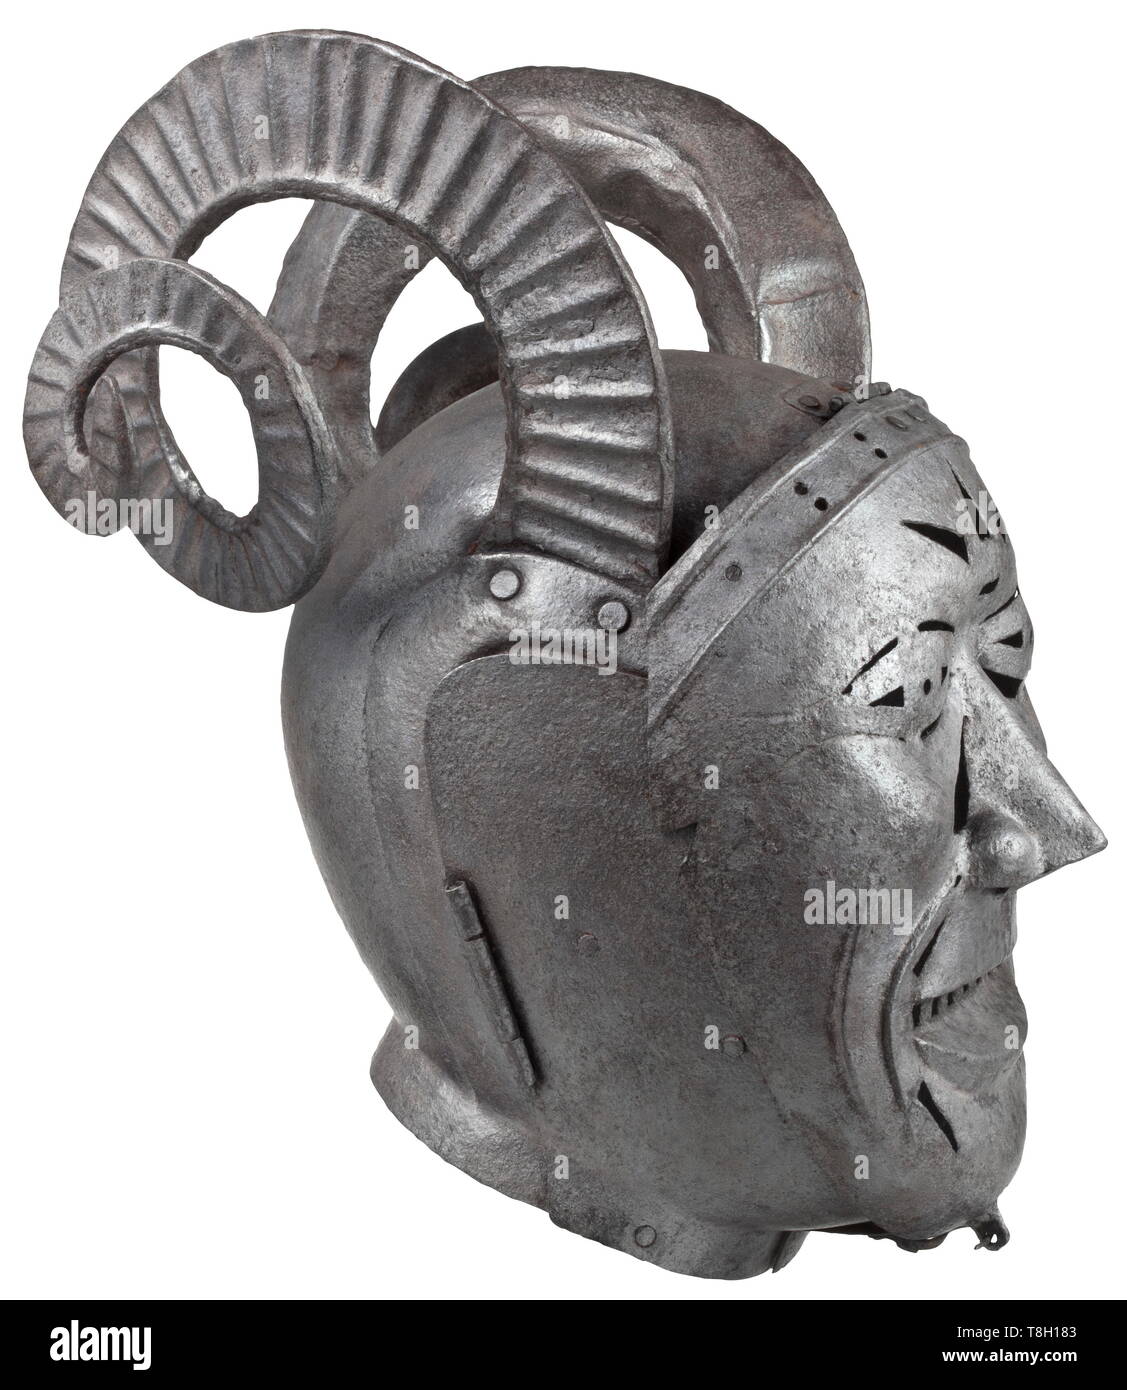 Una maschera di vergogna o brank - collezionista di riproduzione nello stile del XVI secolo a due pezzi di ferro con cranio rivettato, a forma di spirale della ram di corna. Incernierato lateralmente a due pezzi bevor. Incernierata, geometricamente trafitto visiera nella forma di un volto. Un po' corroso con patina scura. Altezza ca. 40 cm. Questo pezzo è stato modellato su un armet alloggiato nella Royal Armouries di Leeds oggi. Il famoso 'cornuto casco' è stato realizzato tra il 1511 e il 1514 da Innsbruck armourer Konrad Seusenhofer ed era un presente dall'imperatore Massimiliano I del re inglese Enrico V, Additional-Rights-Clearance-Info-Not-Available Foto Stock